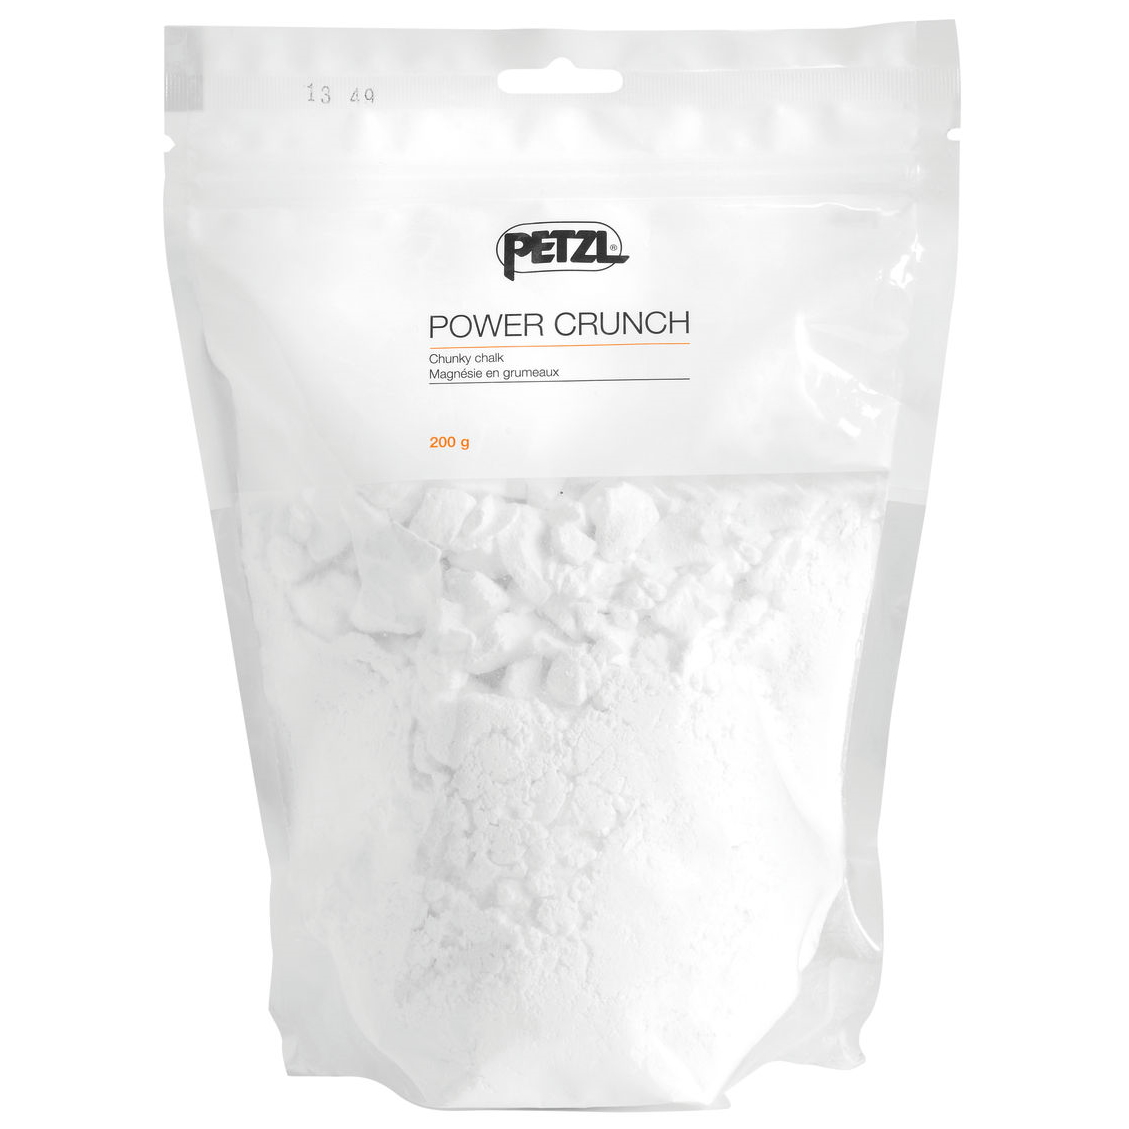 Produktbild von Petzl Power Crunch - 200 g Chalk